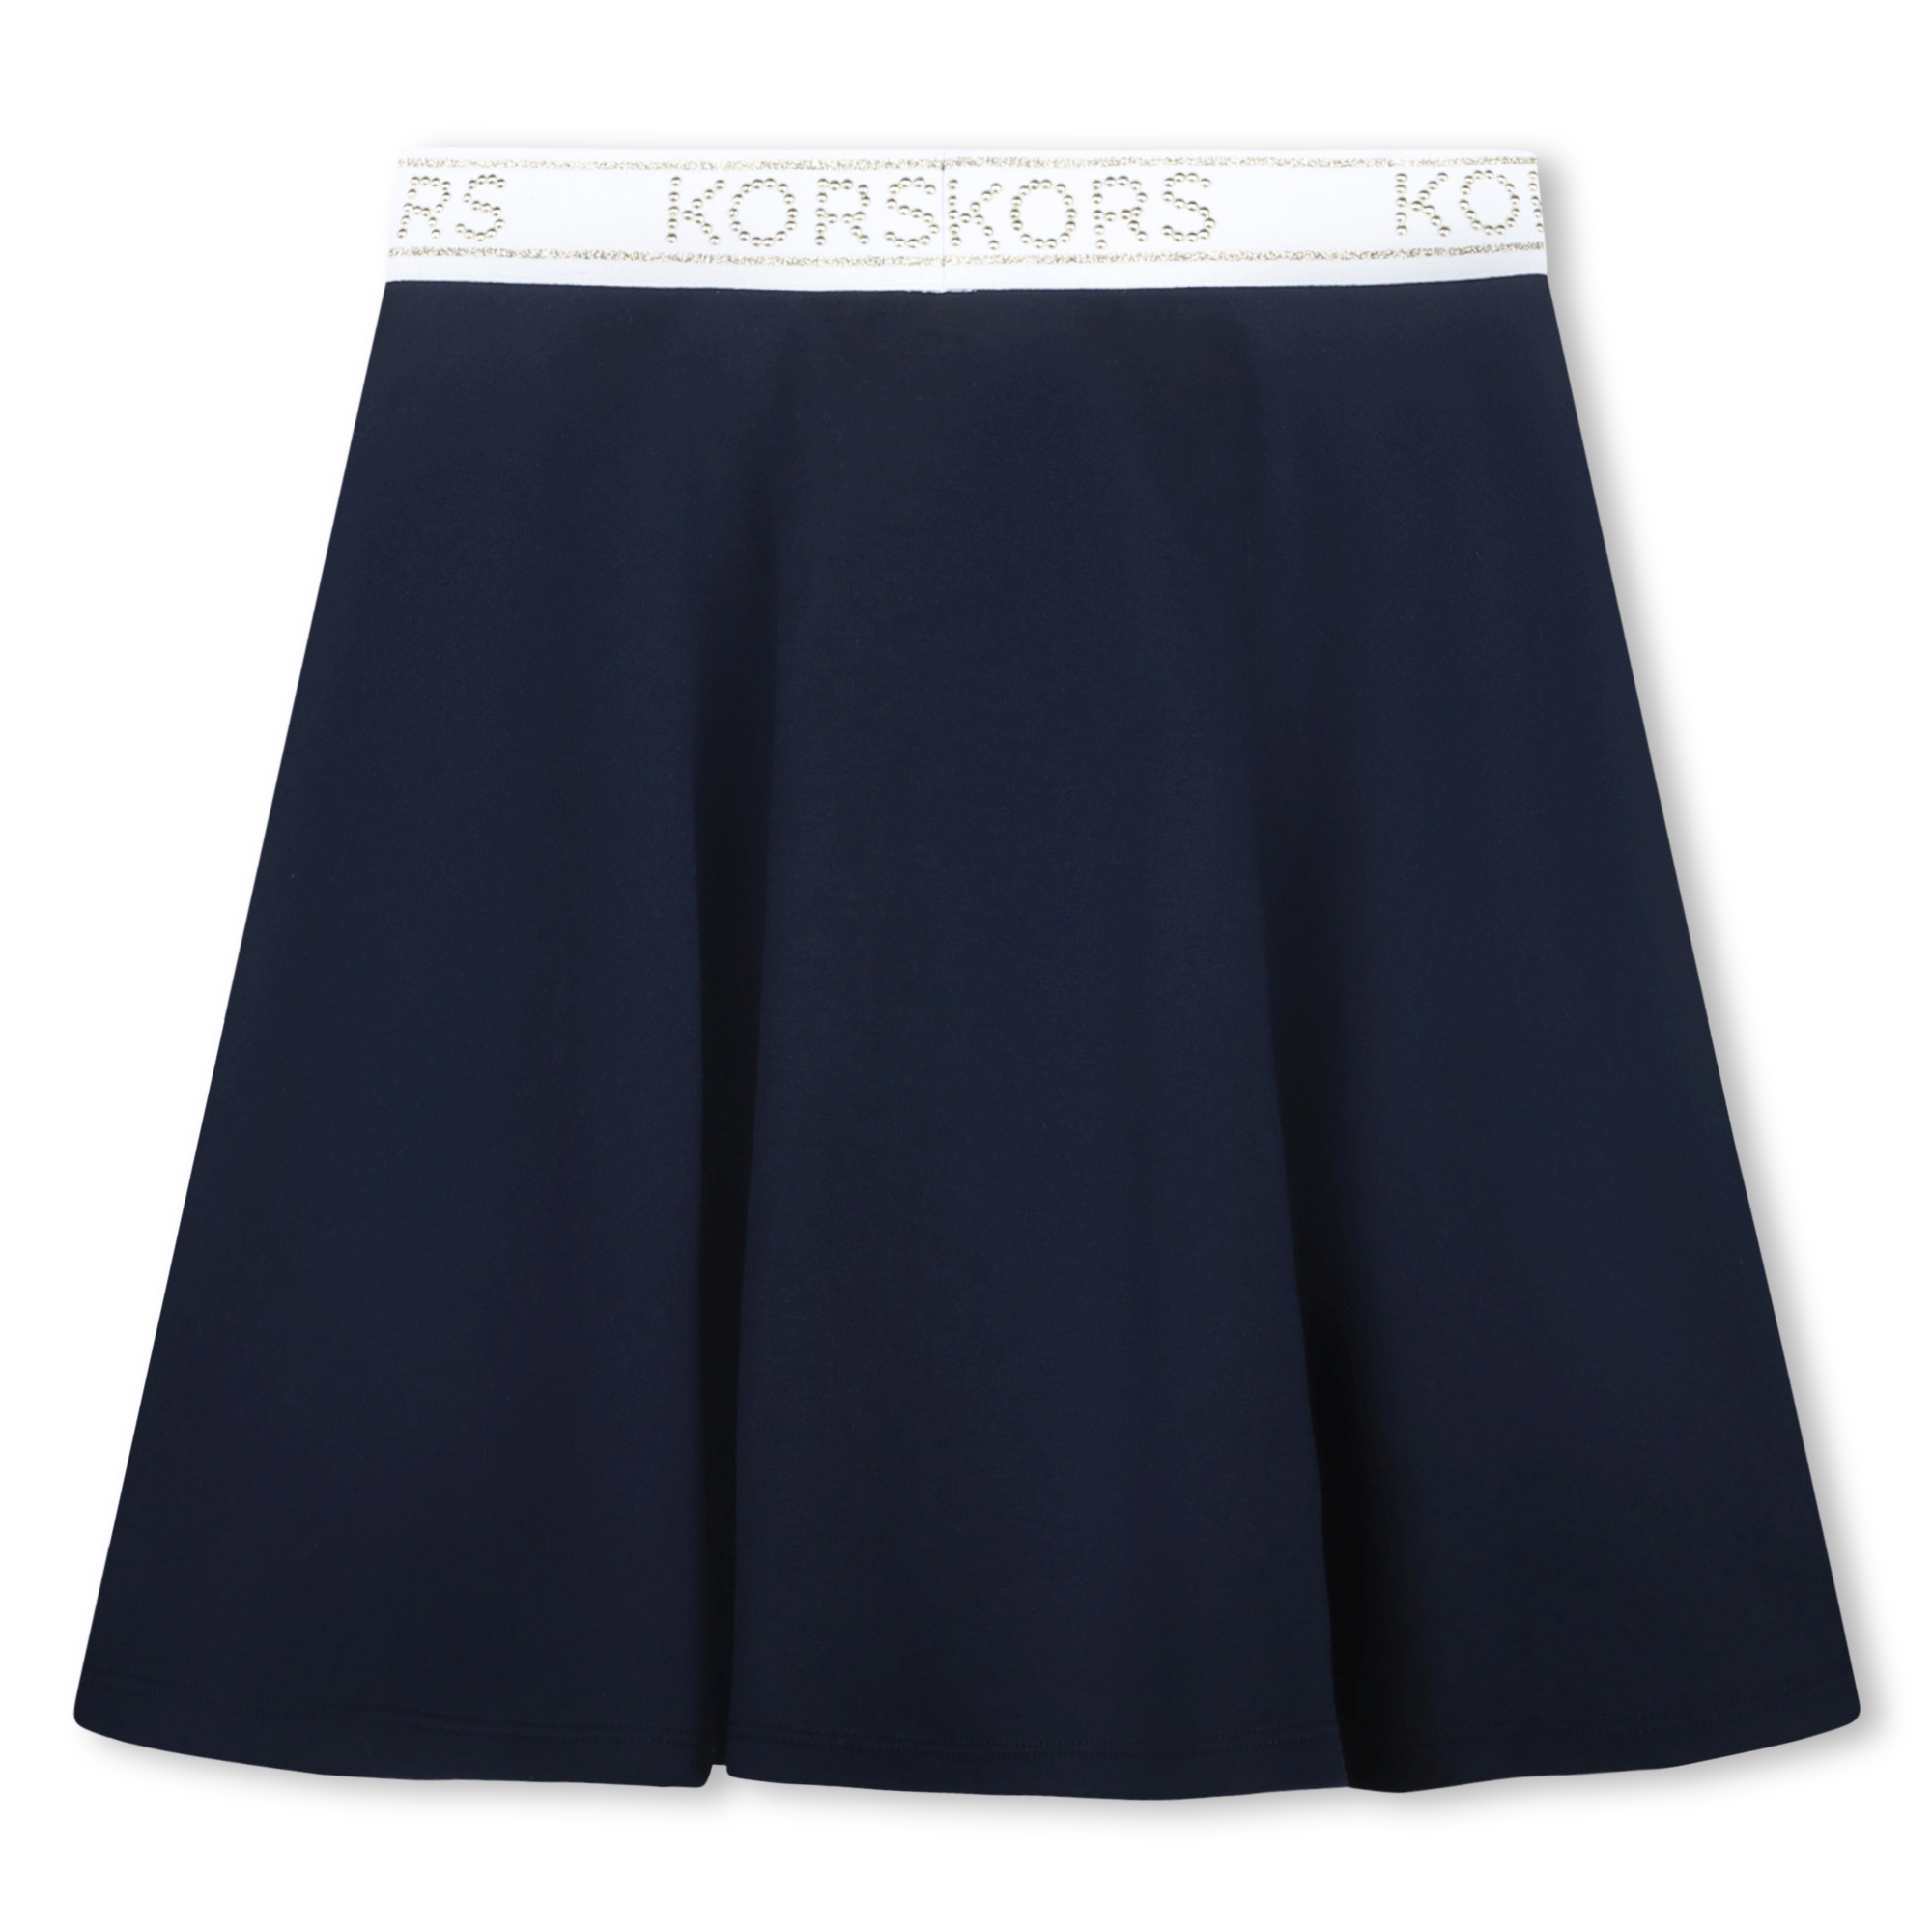 Studded skirt MICHAEL KORS for GIRL